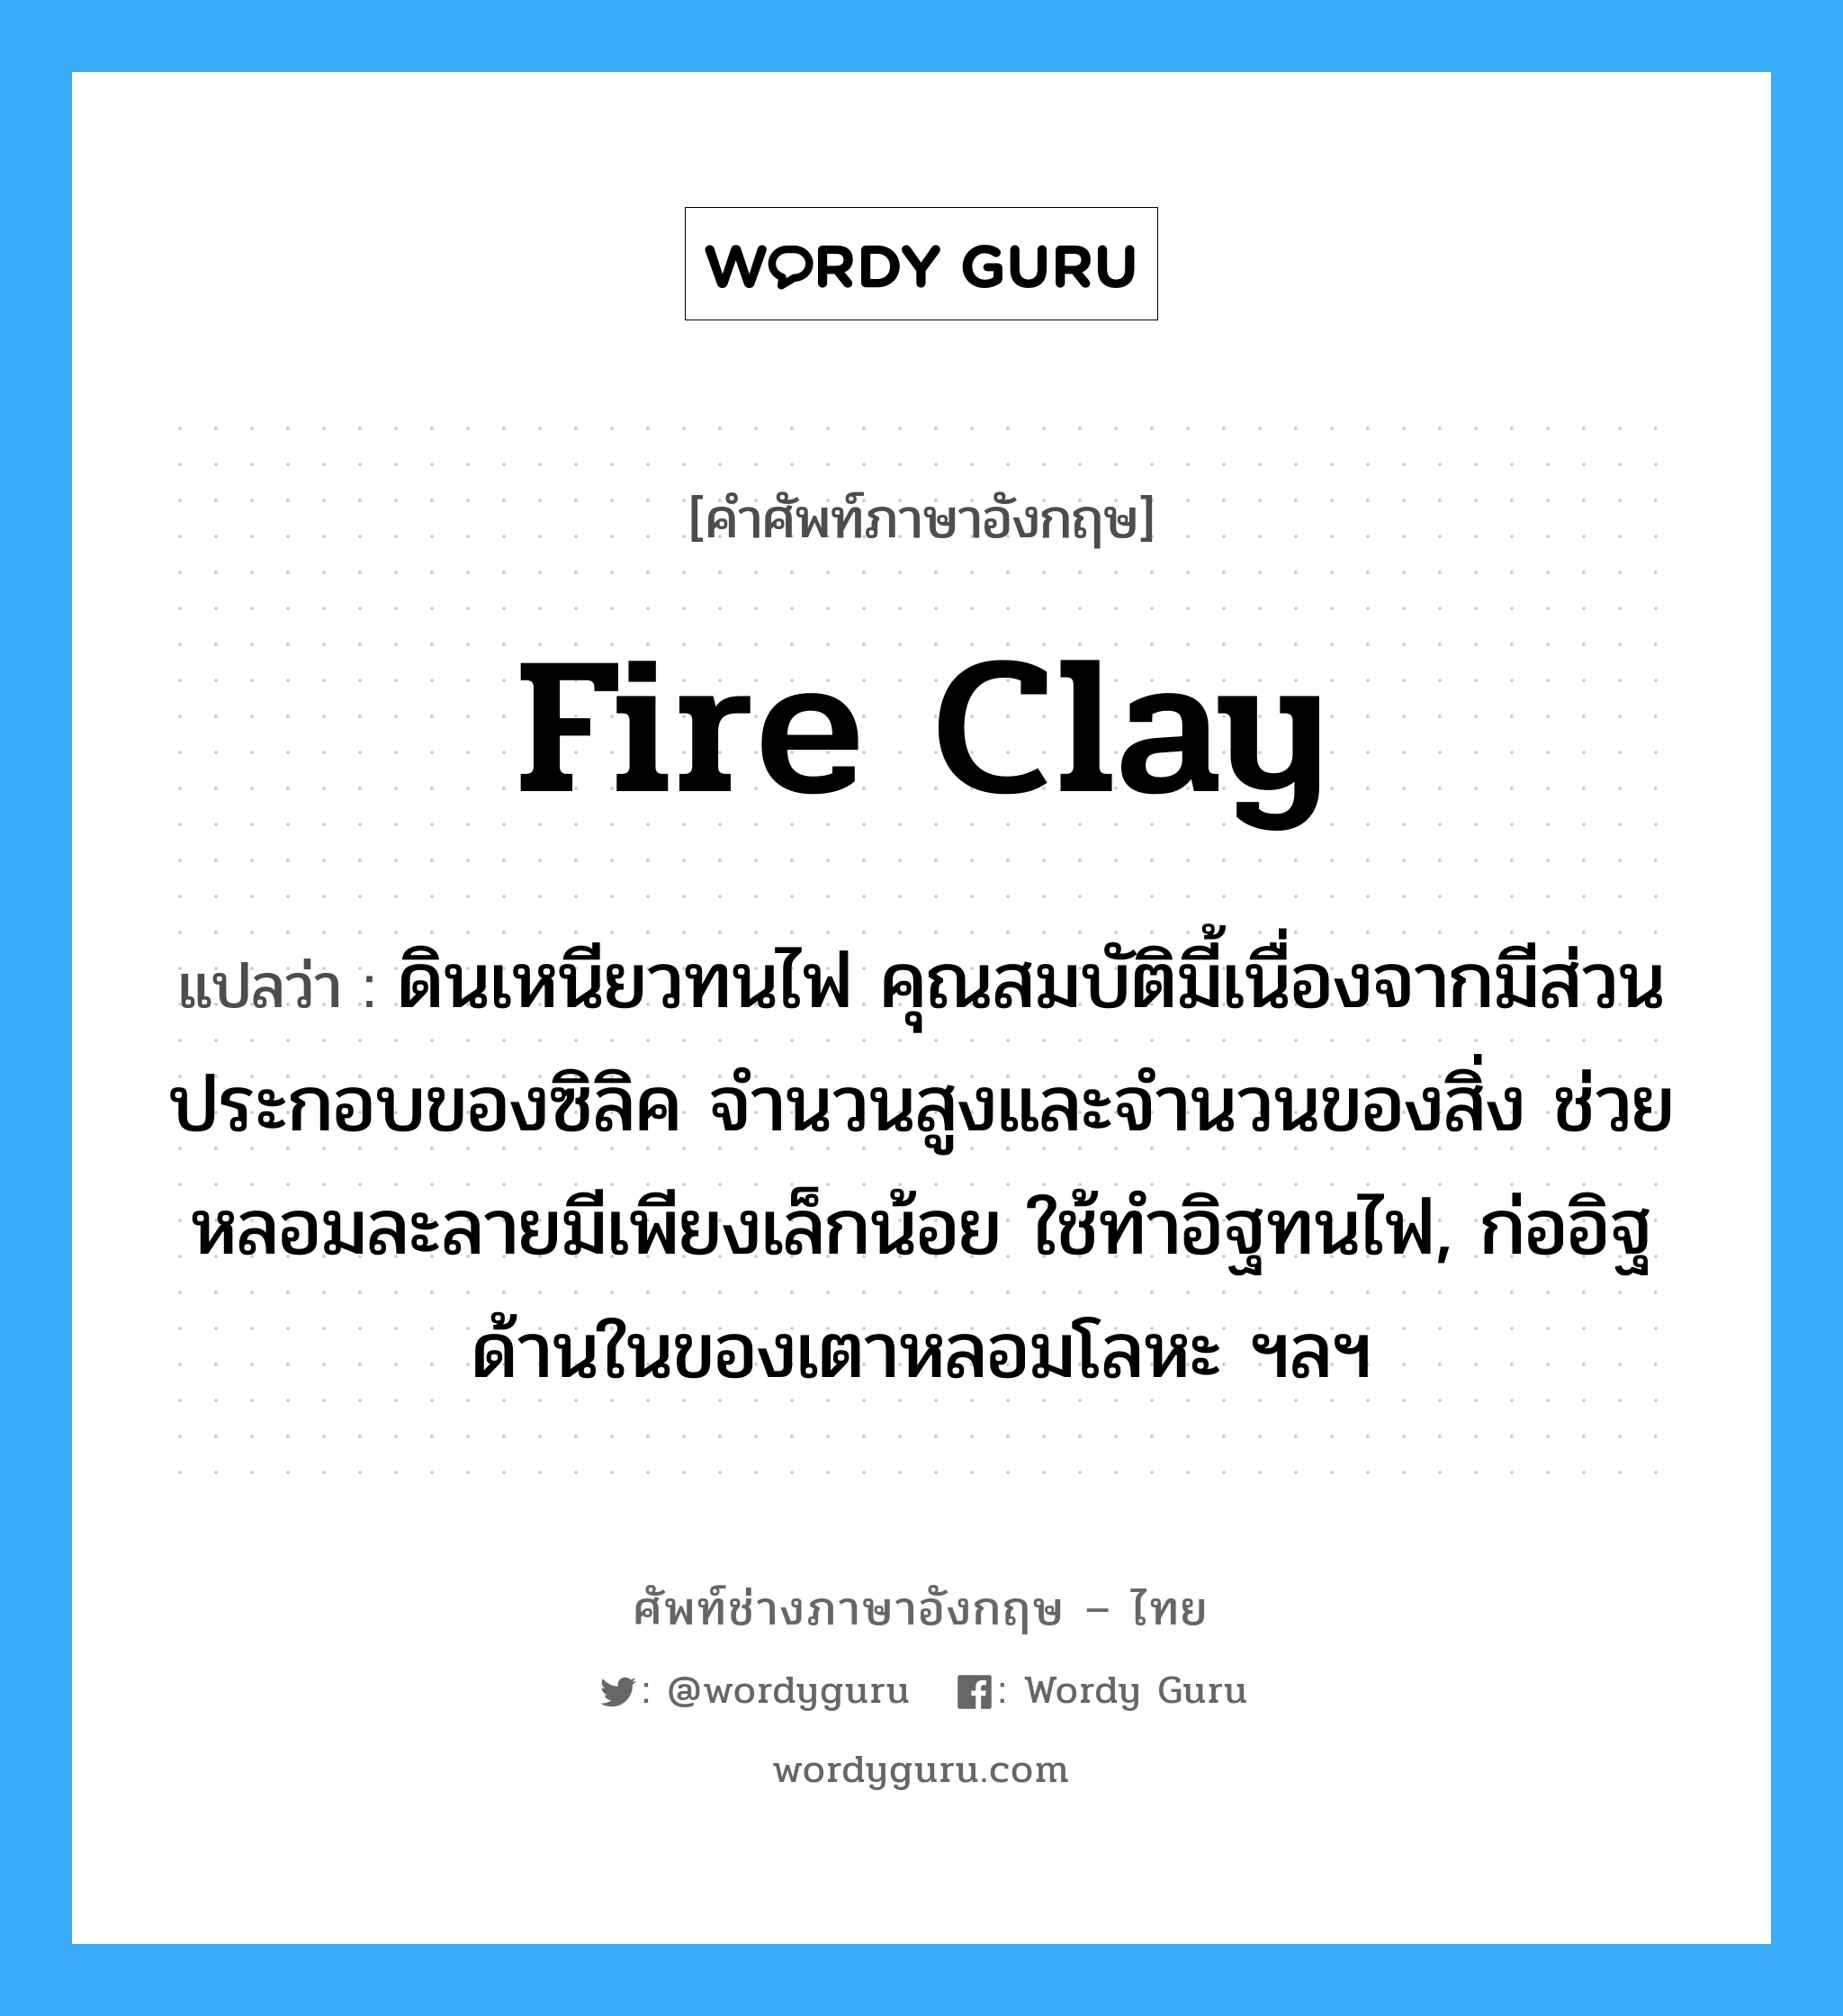 fire clay แปลว่า?, คำศัพท์ช่างภาษาอังกฤษ - ไทย fire clay คำศัพท์ภาษาอังกฤษ fire clay แปลว่า ดินเหนียวทนไฟ คุณสมบัติมี้เนื่องจากมีส่วนประกอบของซิลิค จำนวนสูงและจำนวนของสิ่ง ช่วยหลอมละลายมีเพียงเล็กน้อย ใช้ทำอิฐทนไฟ, ก่ออิฐด้านในของเตาหลอมโลหะ ฯลฯ